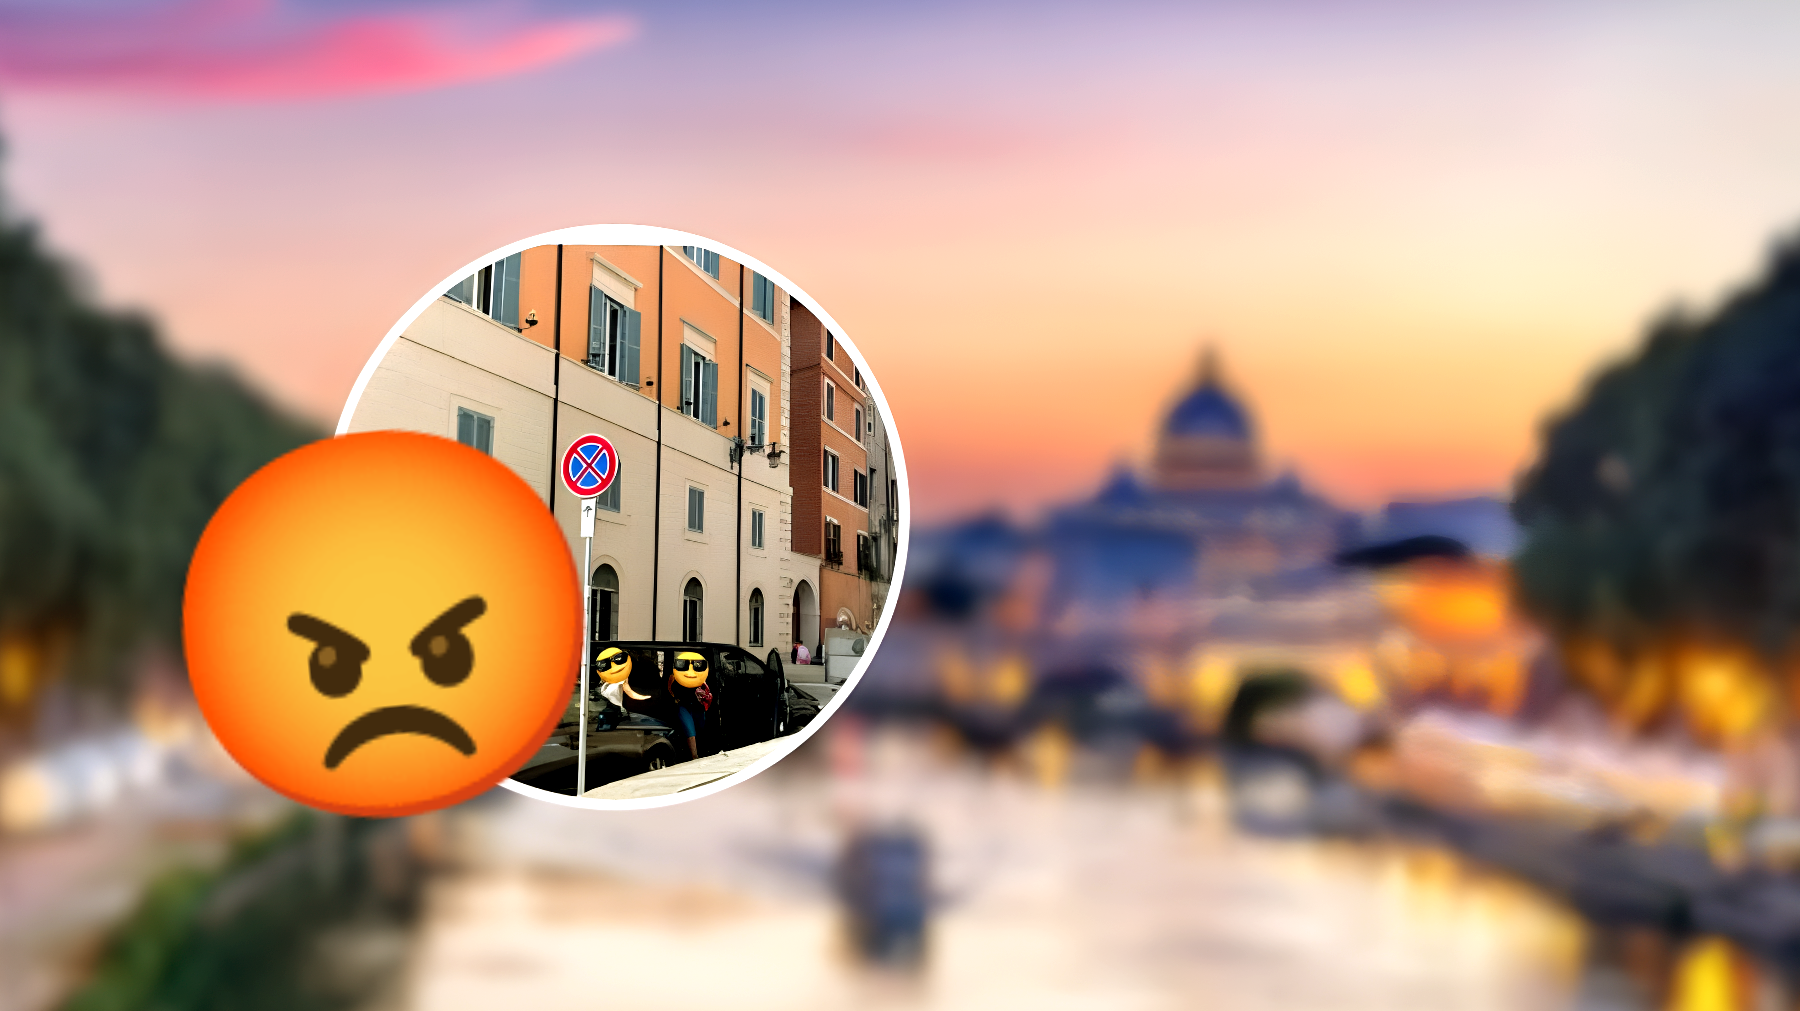 Scandalo a Roma: parcheggio selvaggio vicino al monumento simbolo, nonostante il divieto... cosa succede dopo? n